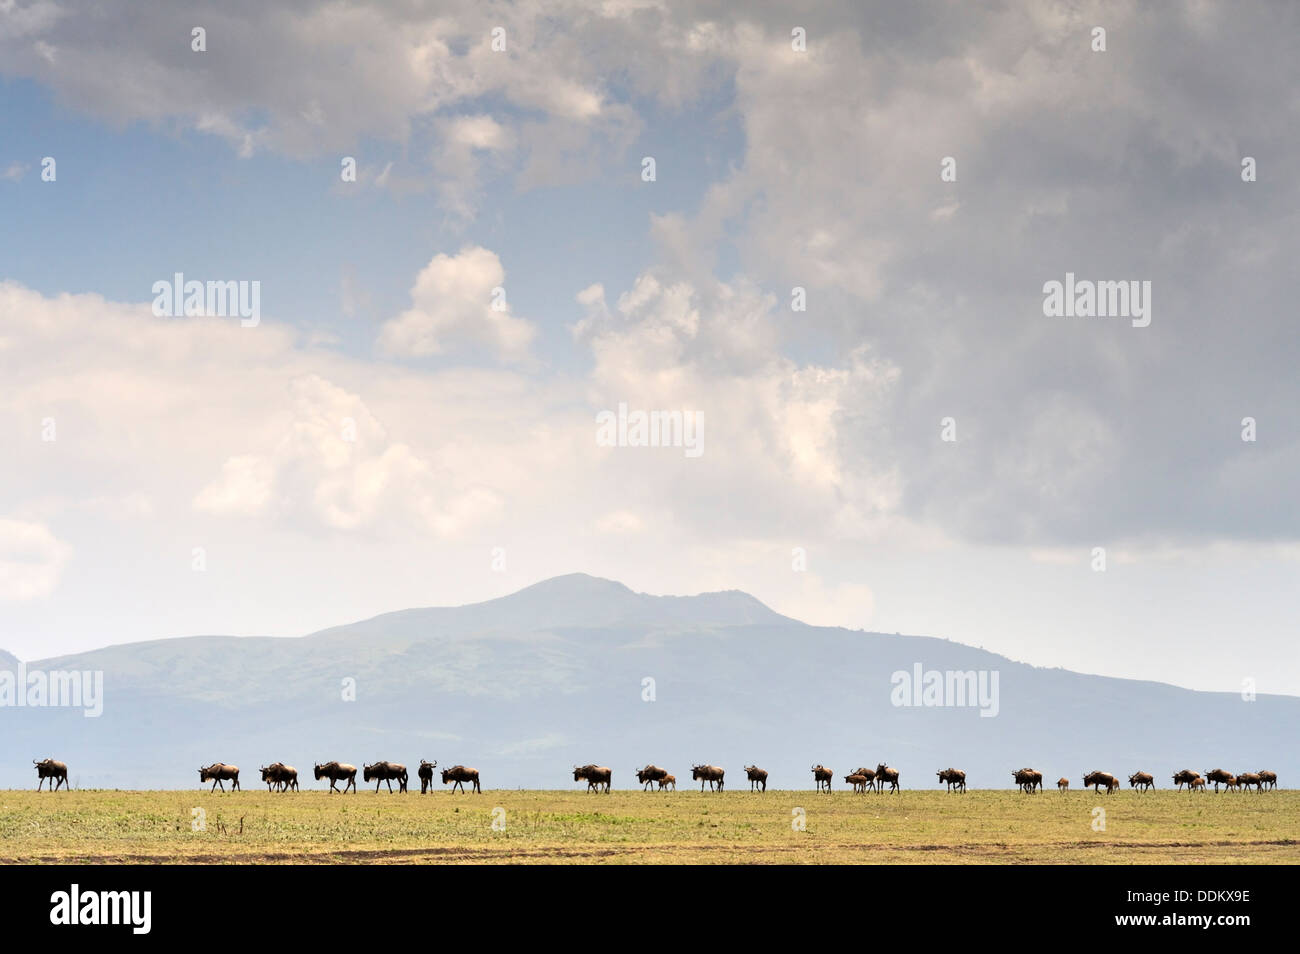 Ligne de gnous, gnu (Connochaetes taurinus), devant le Ngorongoro Crater mountain vu de Serengeti, Tanzanie Banque D'Images